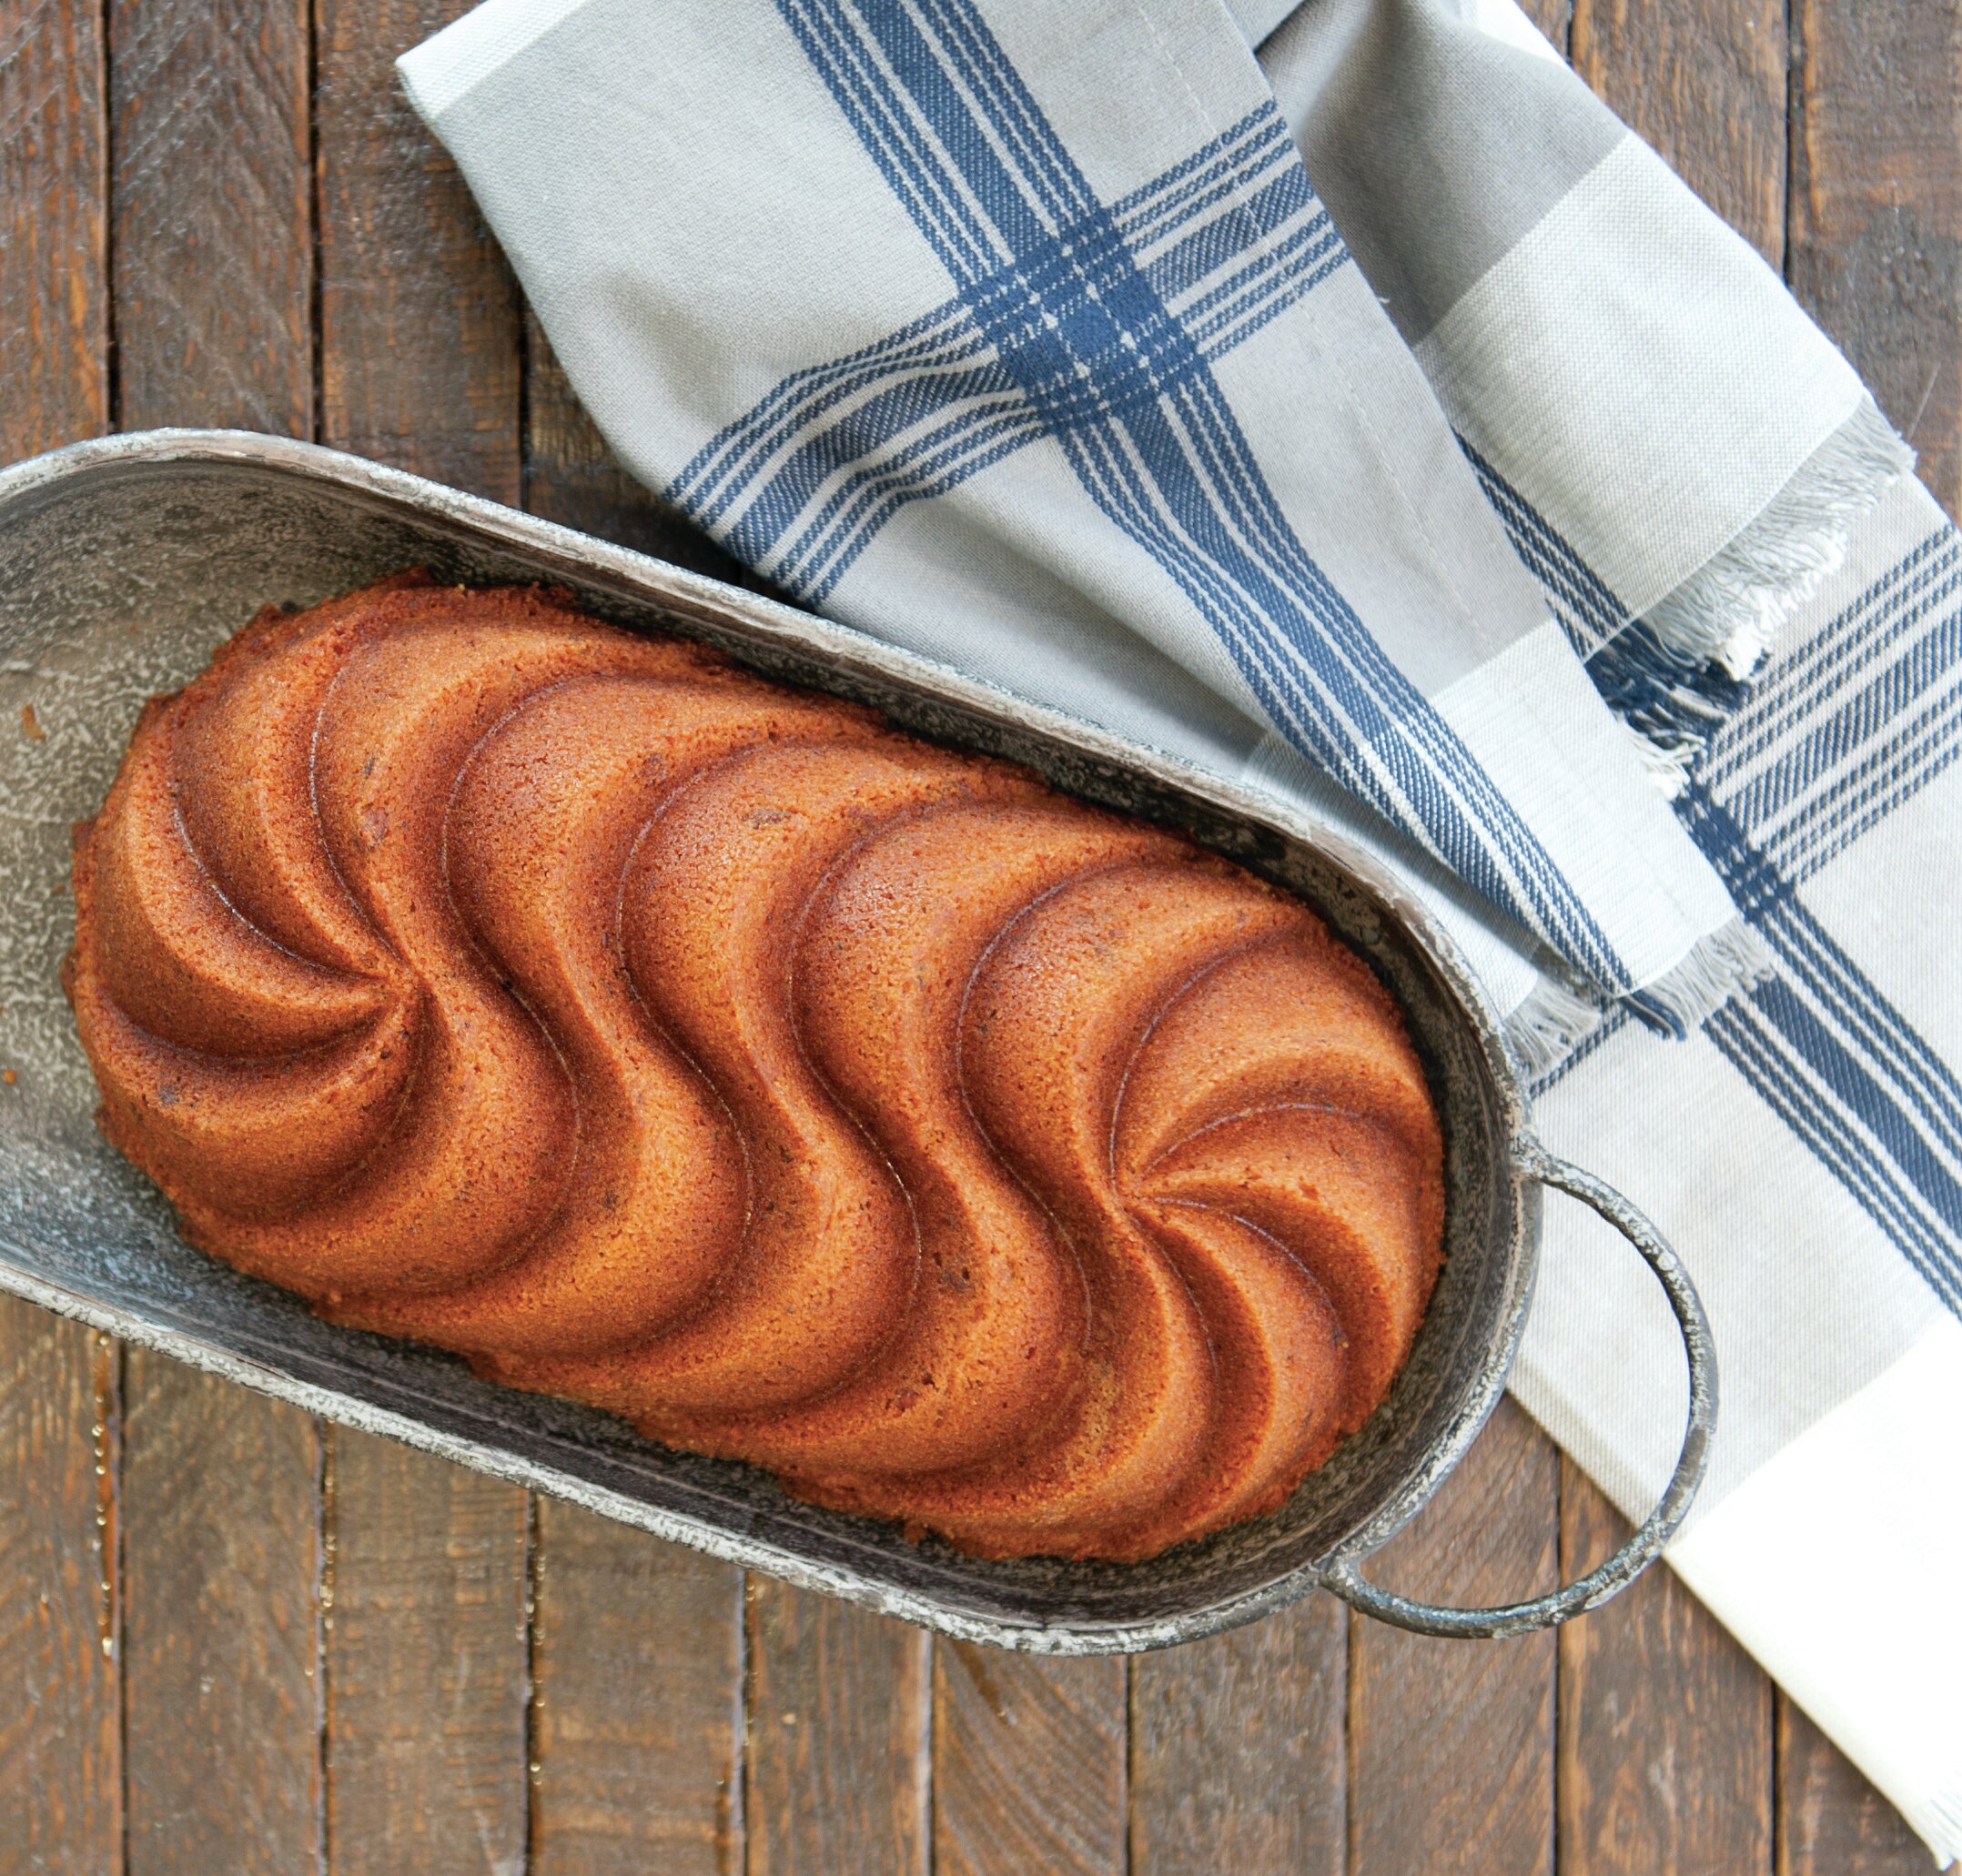 Nordic Ware Naturals Set: 9 x 13 Cake Pan with Lid, 9 Round Cake Pan, 1.5 lb. Loaf Pan